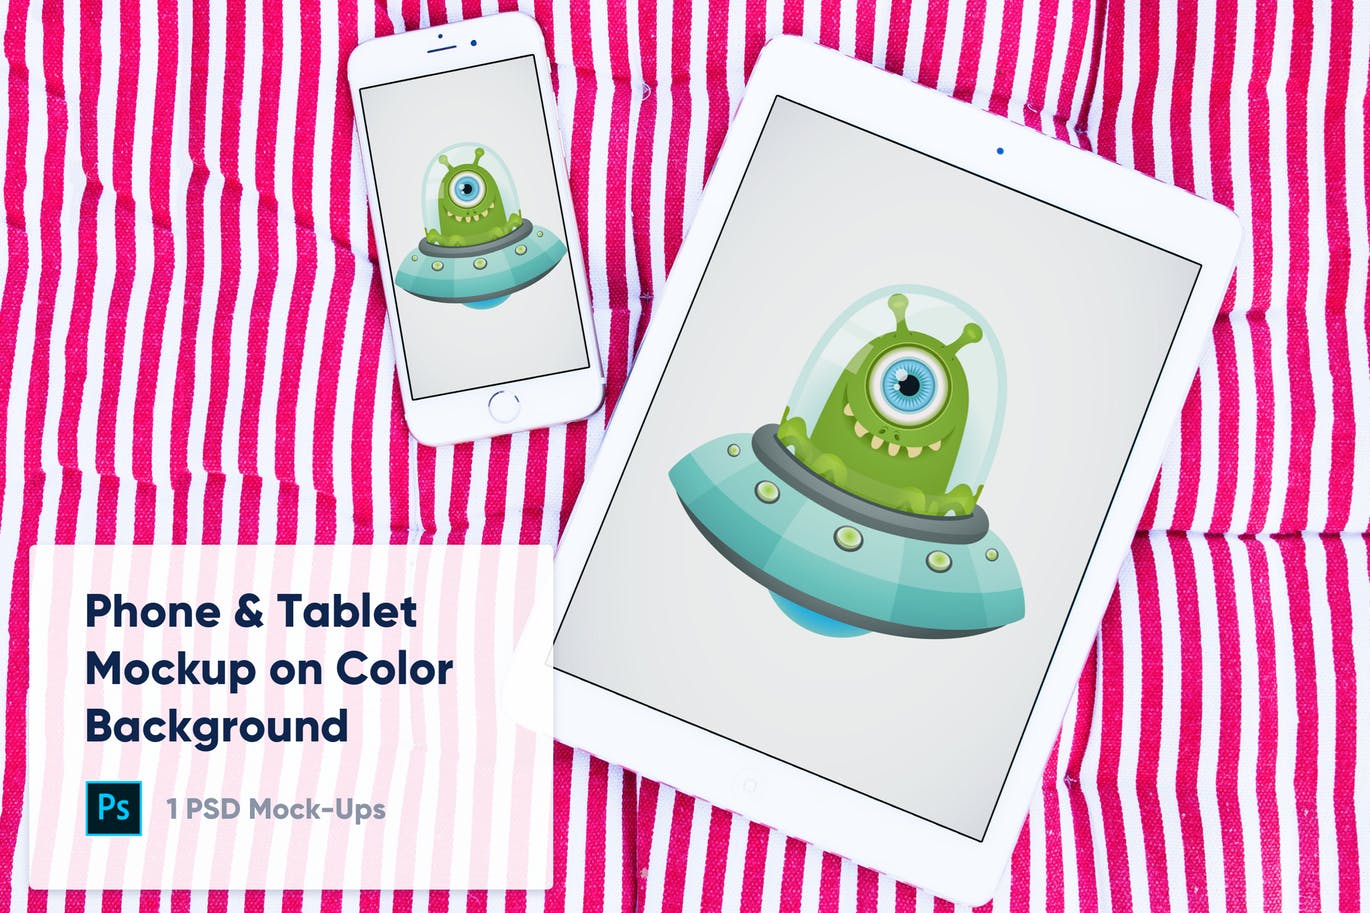 彩色背景平板电脑&手机蚂蚁素材精选样机模板 1 Tablet & Phone Mockup on Color Background插图